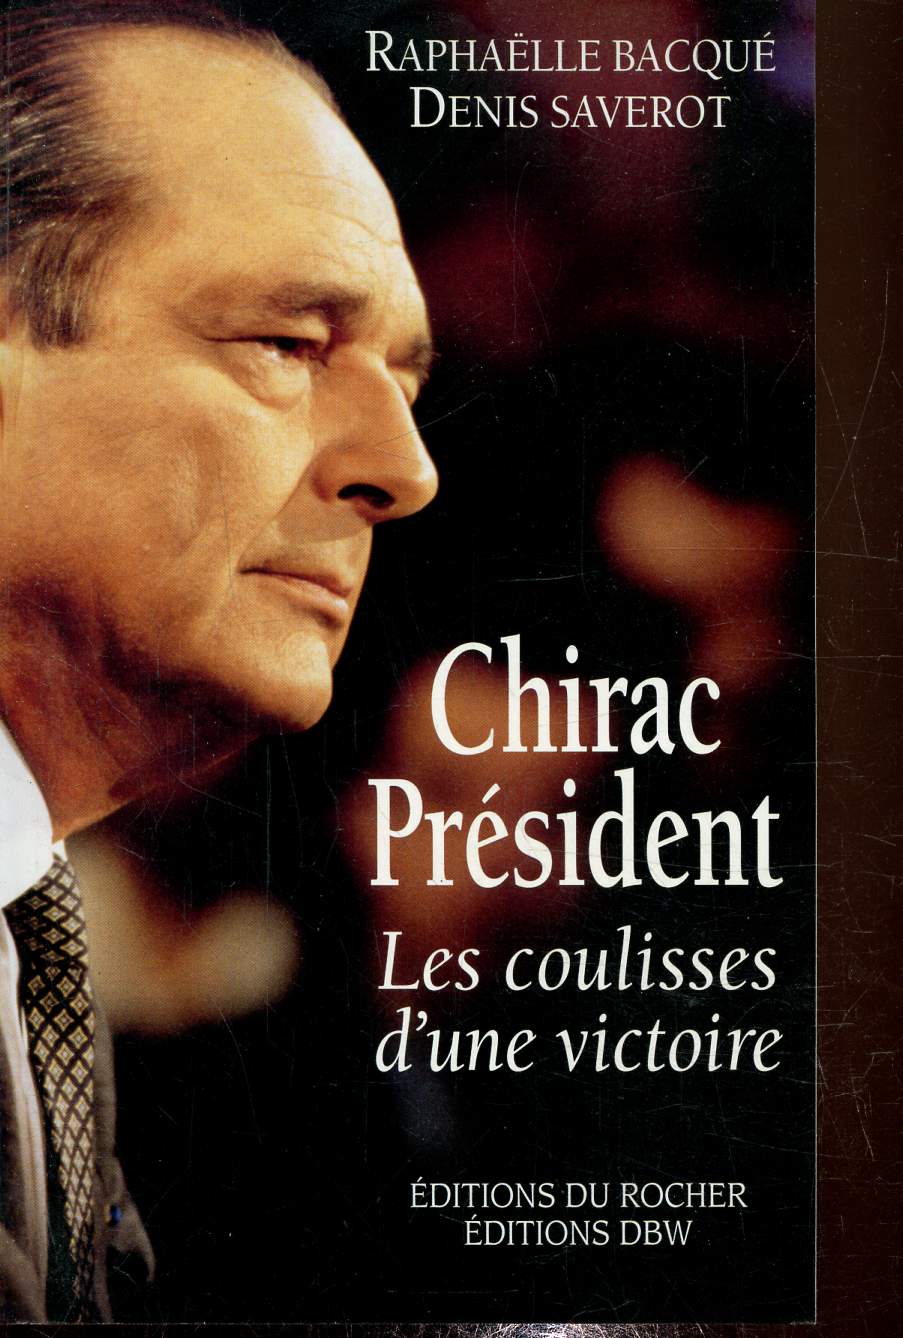 Chirac Prsident, les coulisses d'une victoire